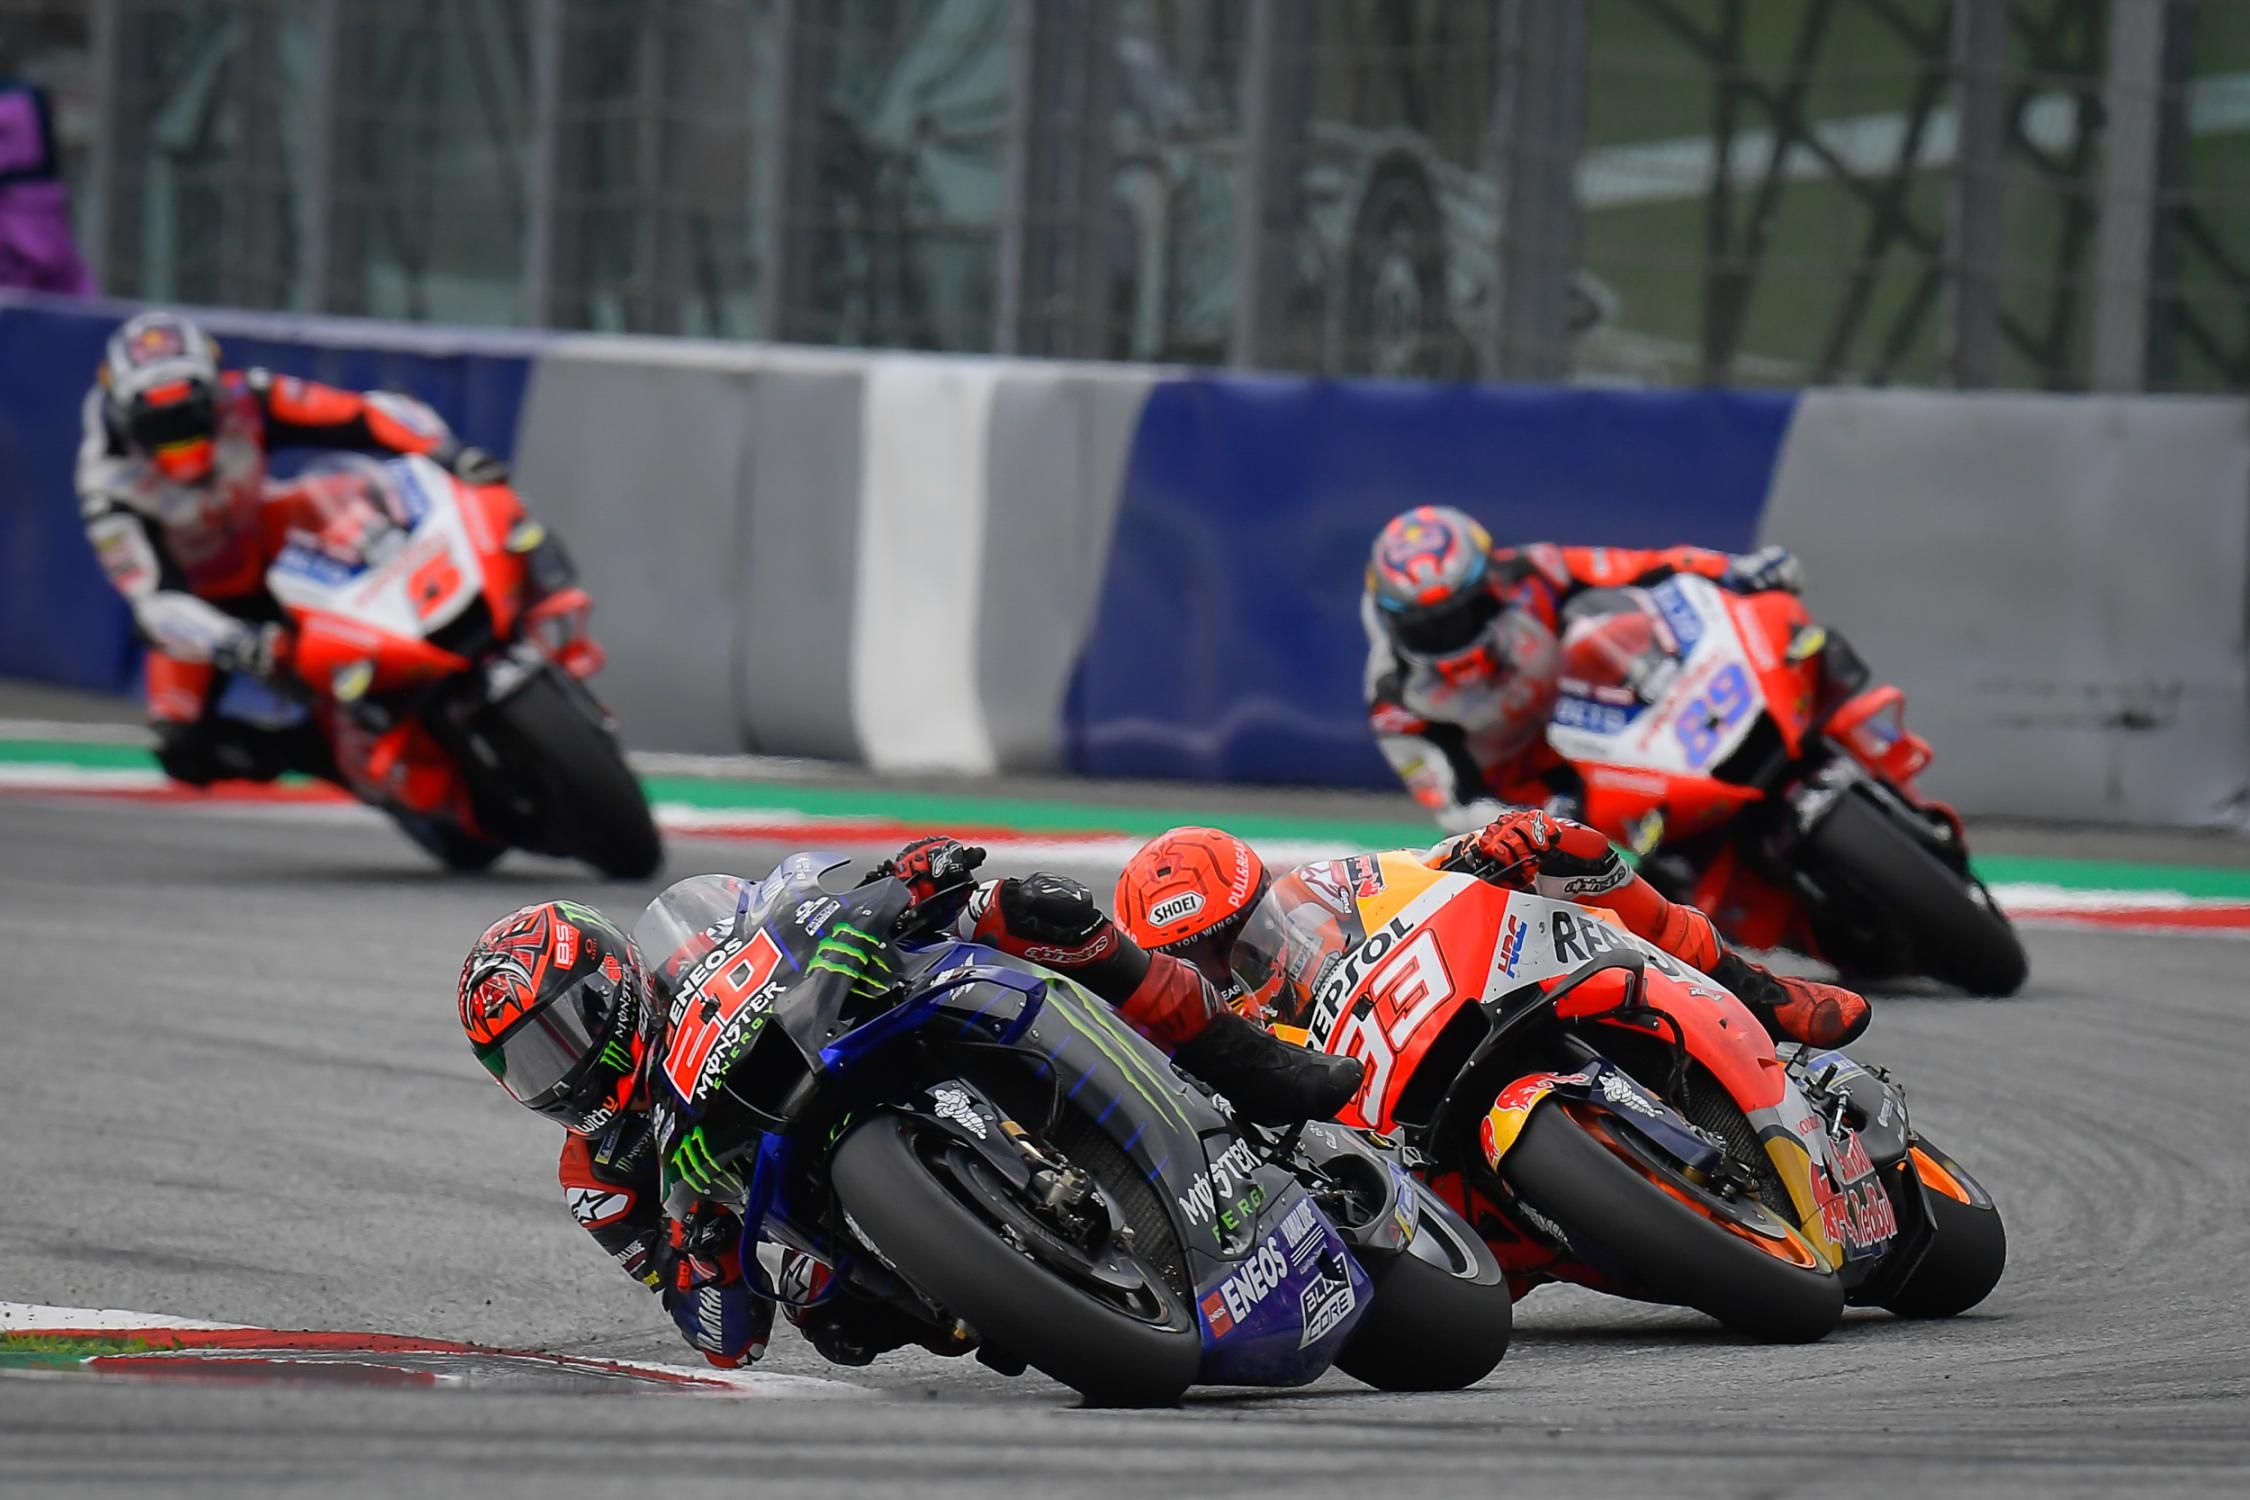 Jadwal dan Link Live Streaming MotoGP Austria 2022, Tinggal Klik Buat Nonton Keseruannya